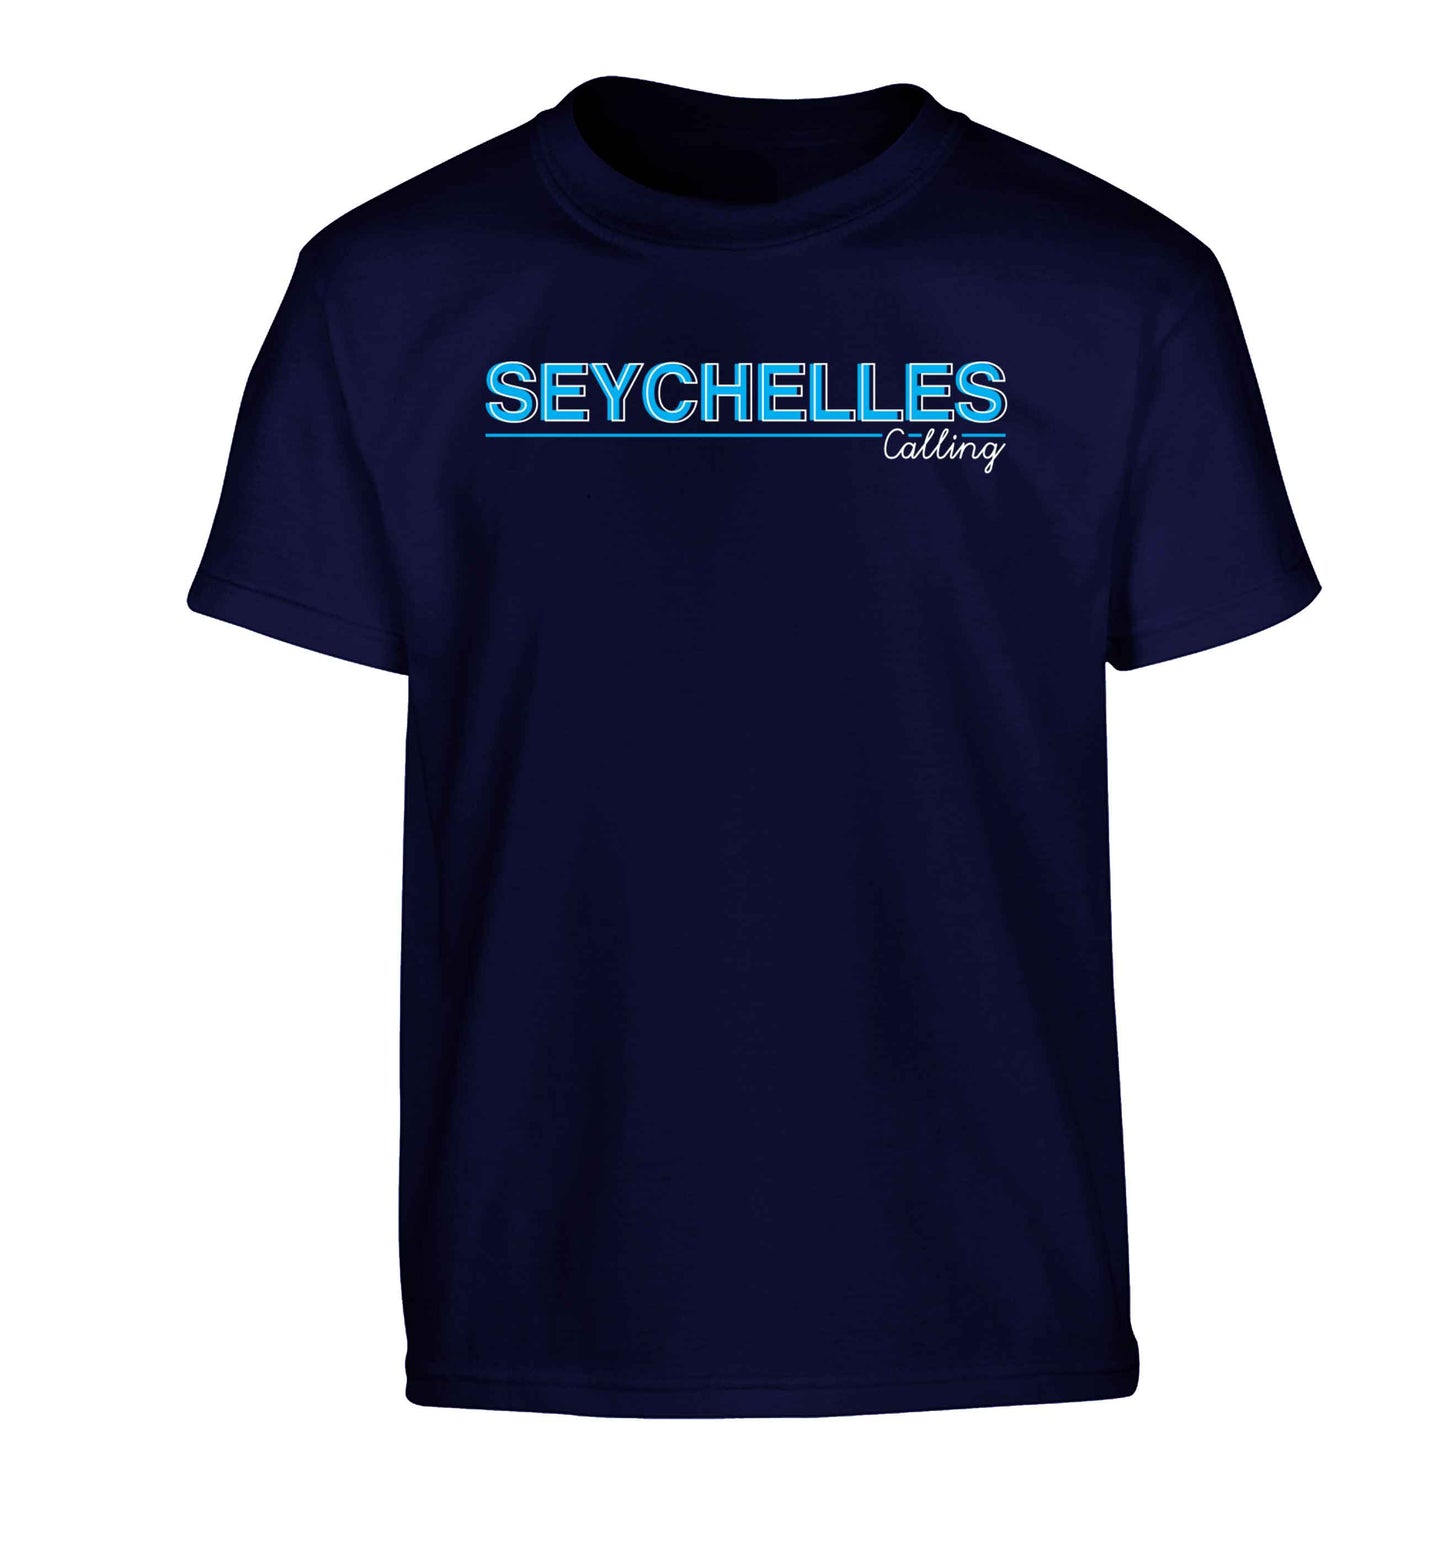 Seychelles calling Children's navy Tshirt 12-13 Years